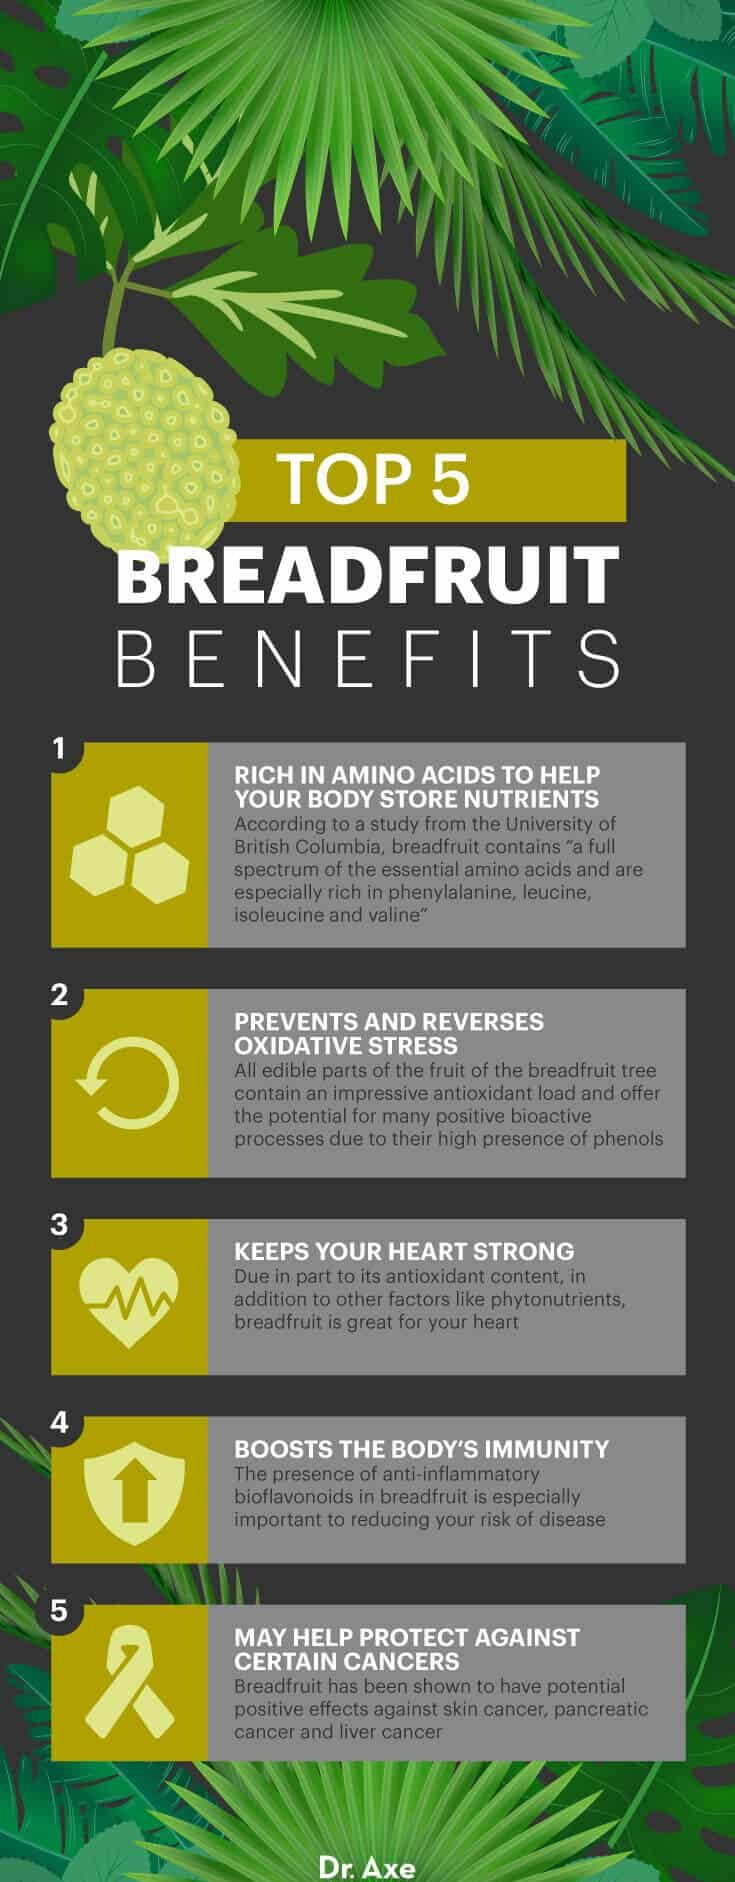 Breadfruit benefits - Dr. Axe